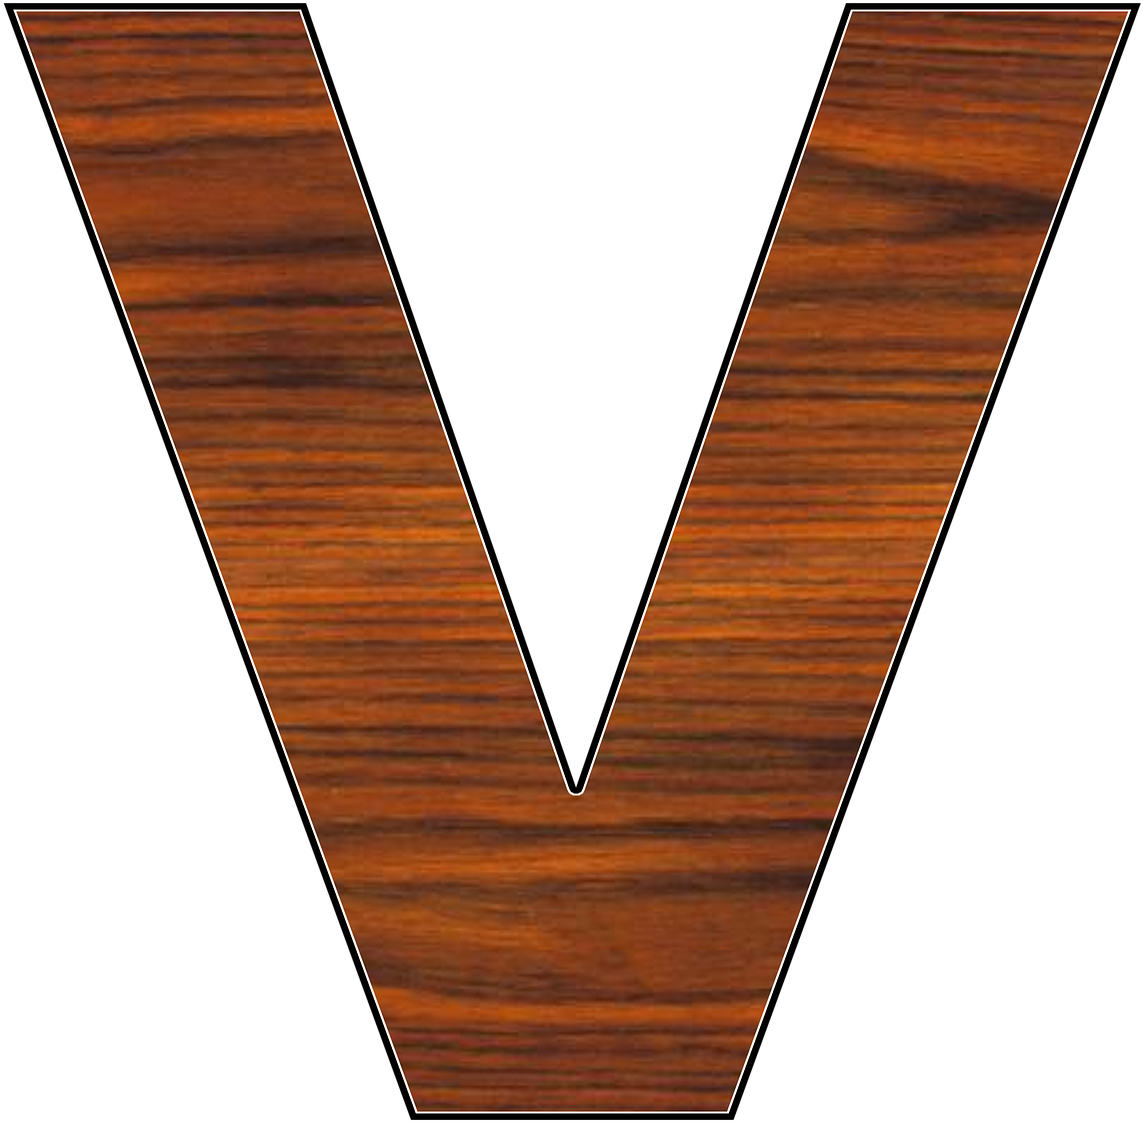 A Wooden Letter V